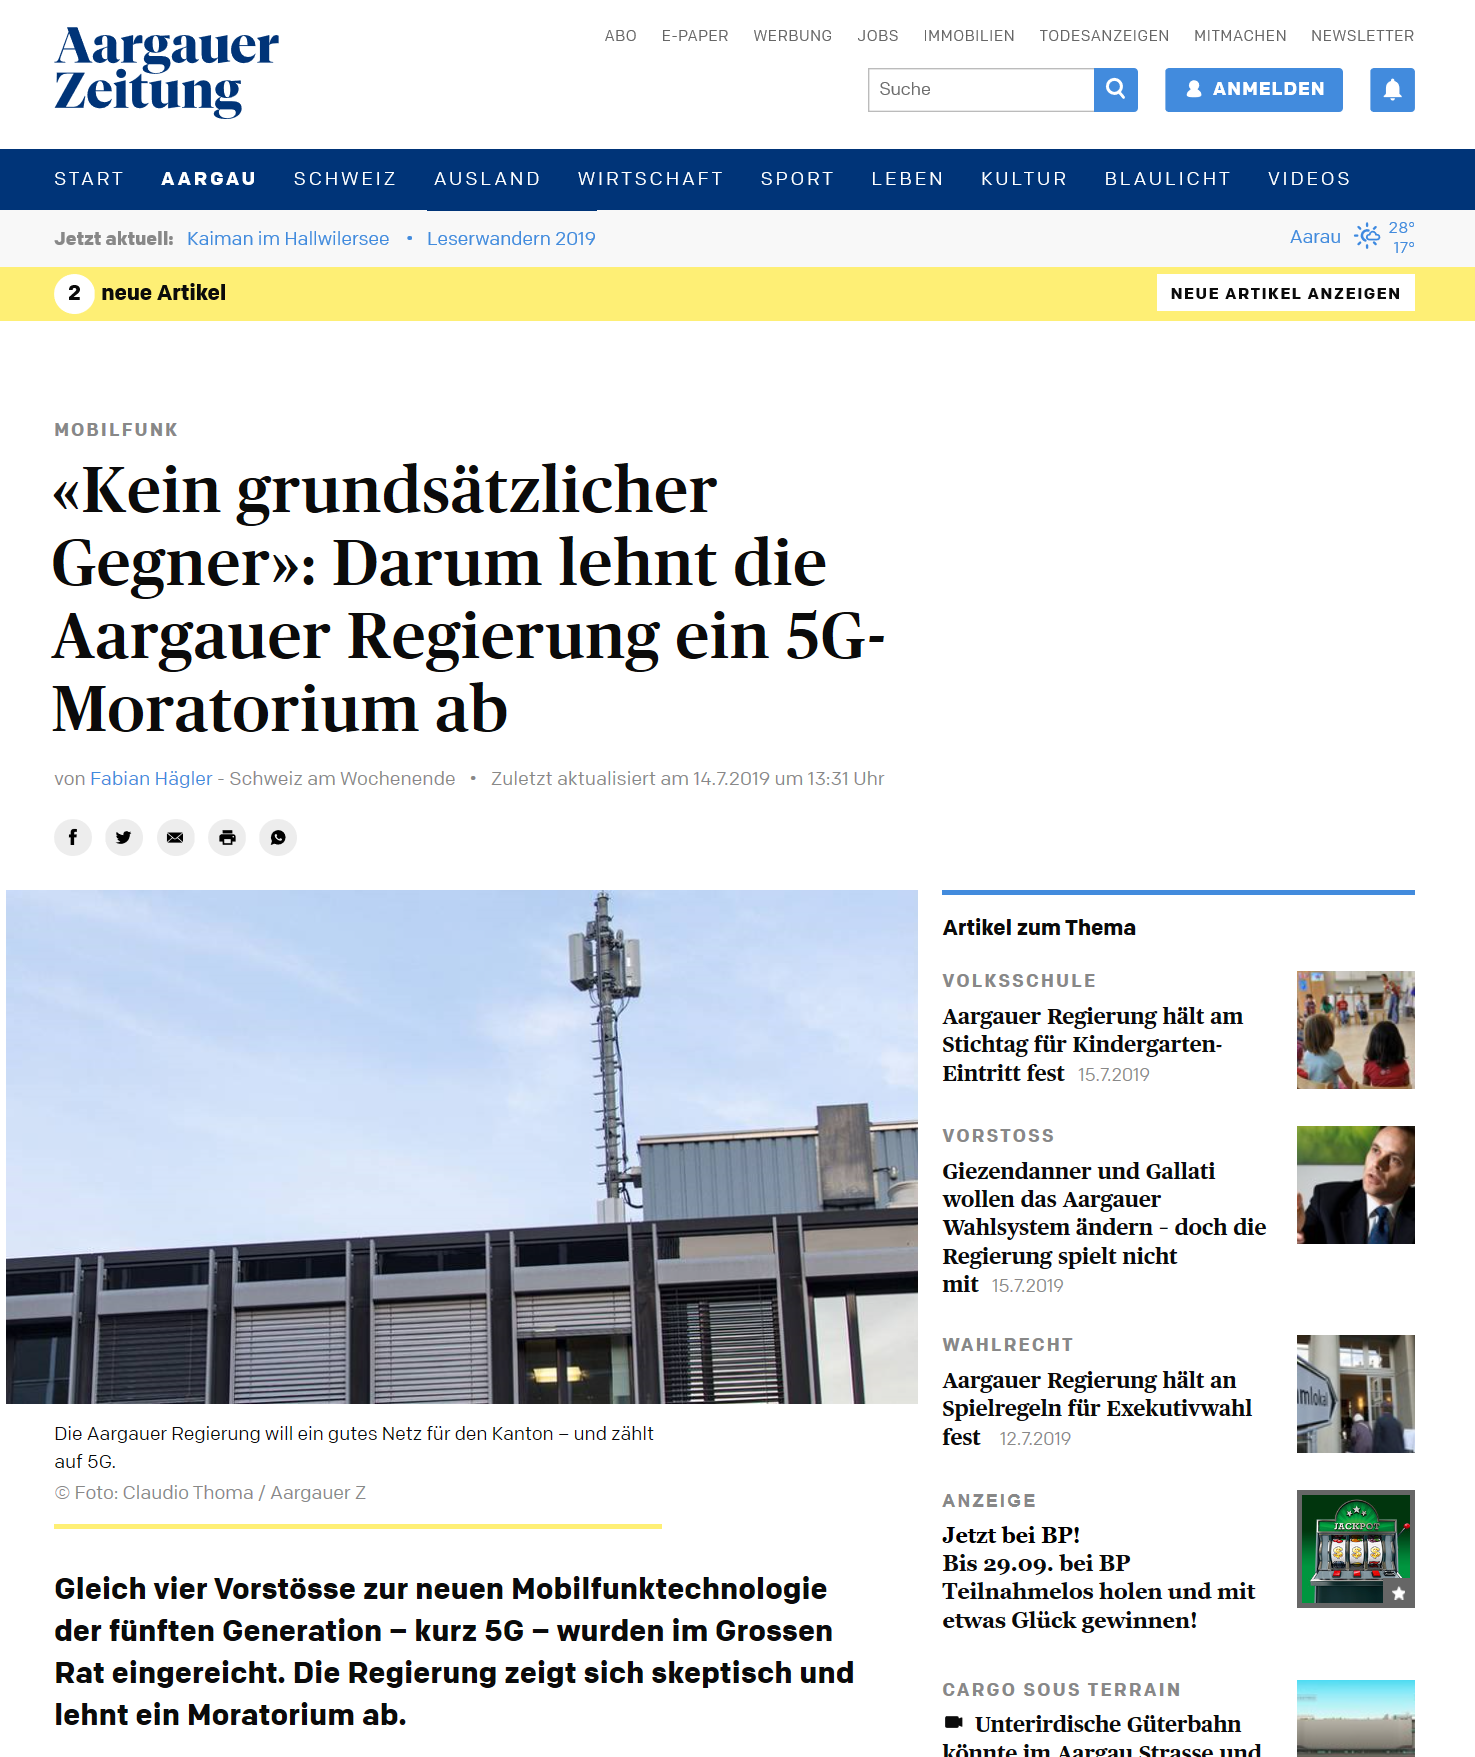 Kein Grunsätzlicher Gegner, darum lehnt die Aargauer Regierung ein 5G Moratorium ab.